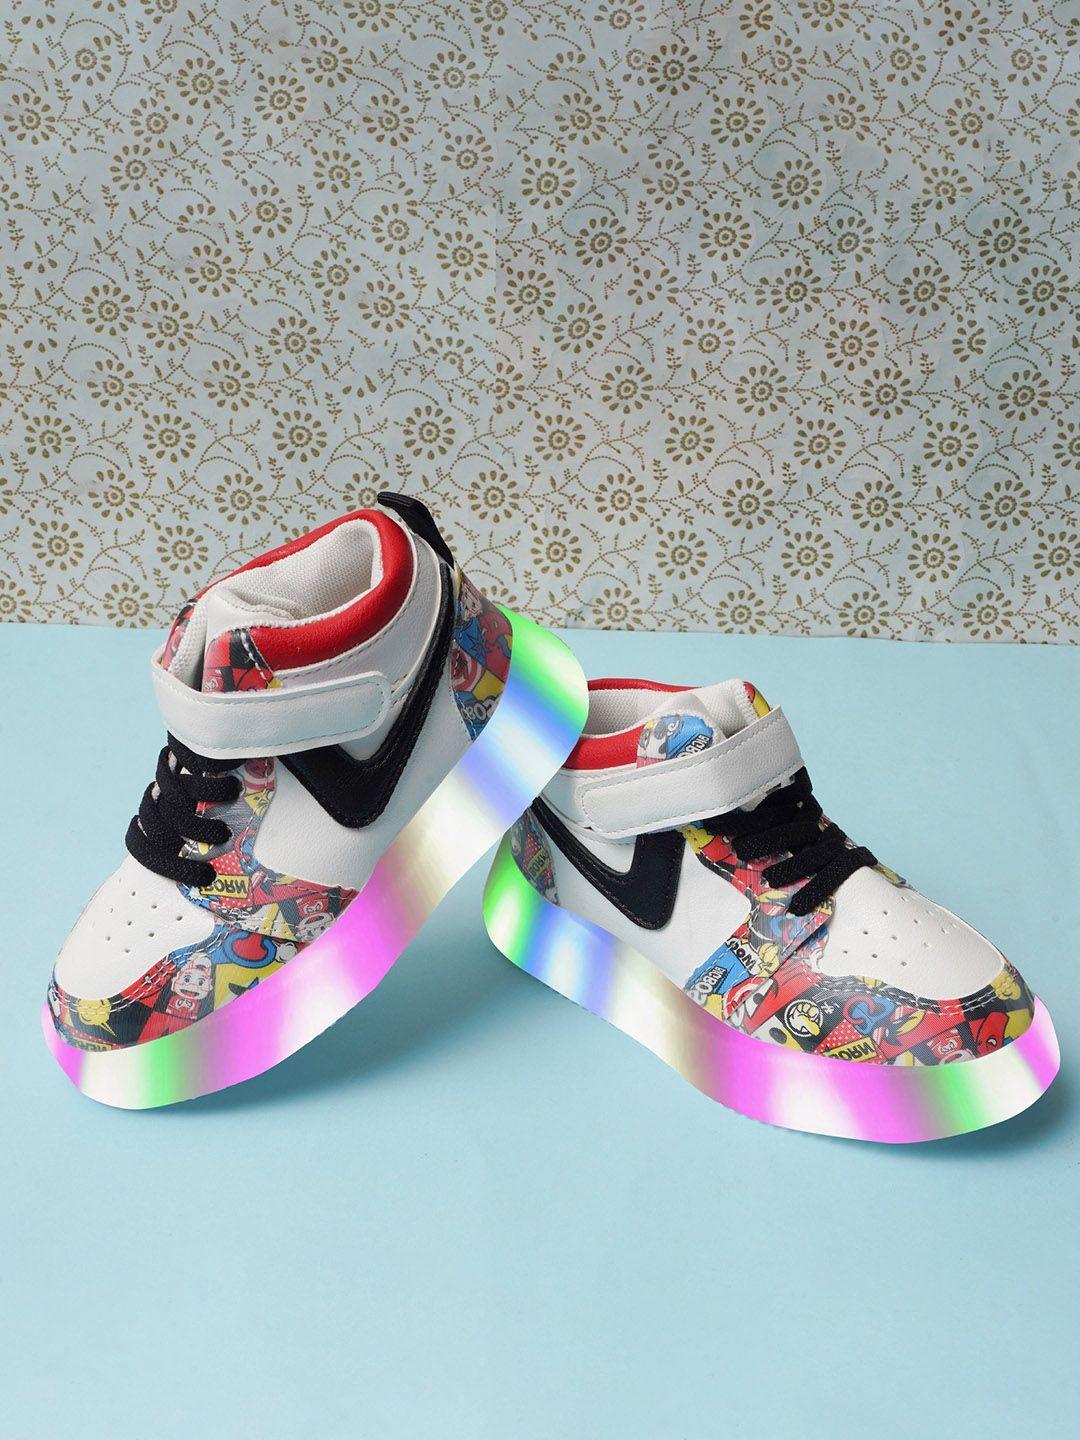 baesd kids printed lightweight led sneakers